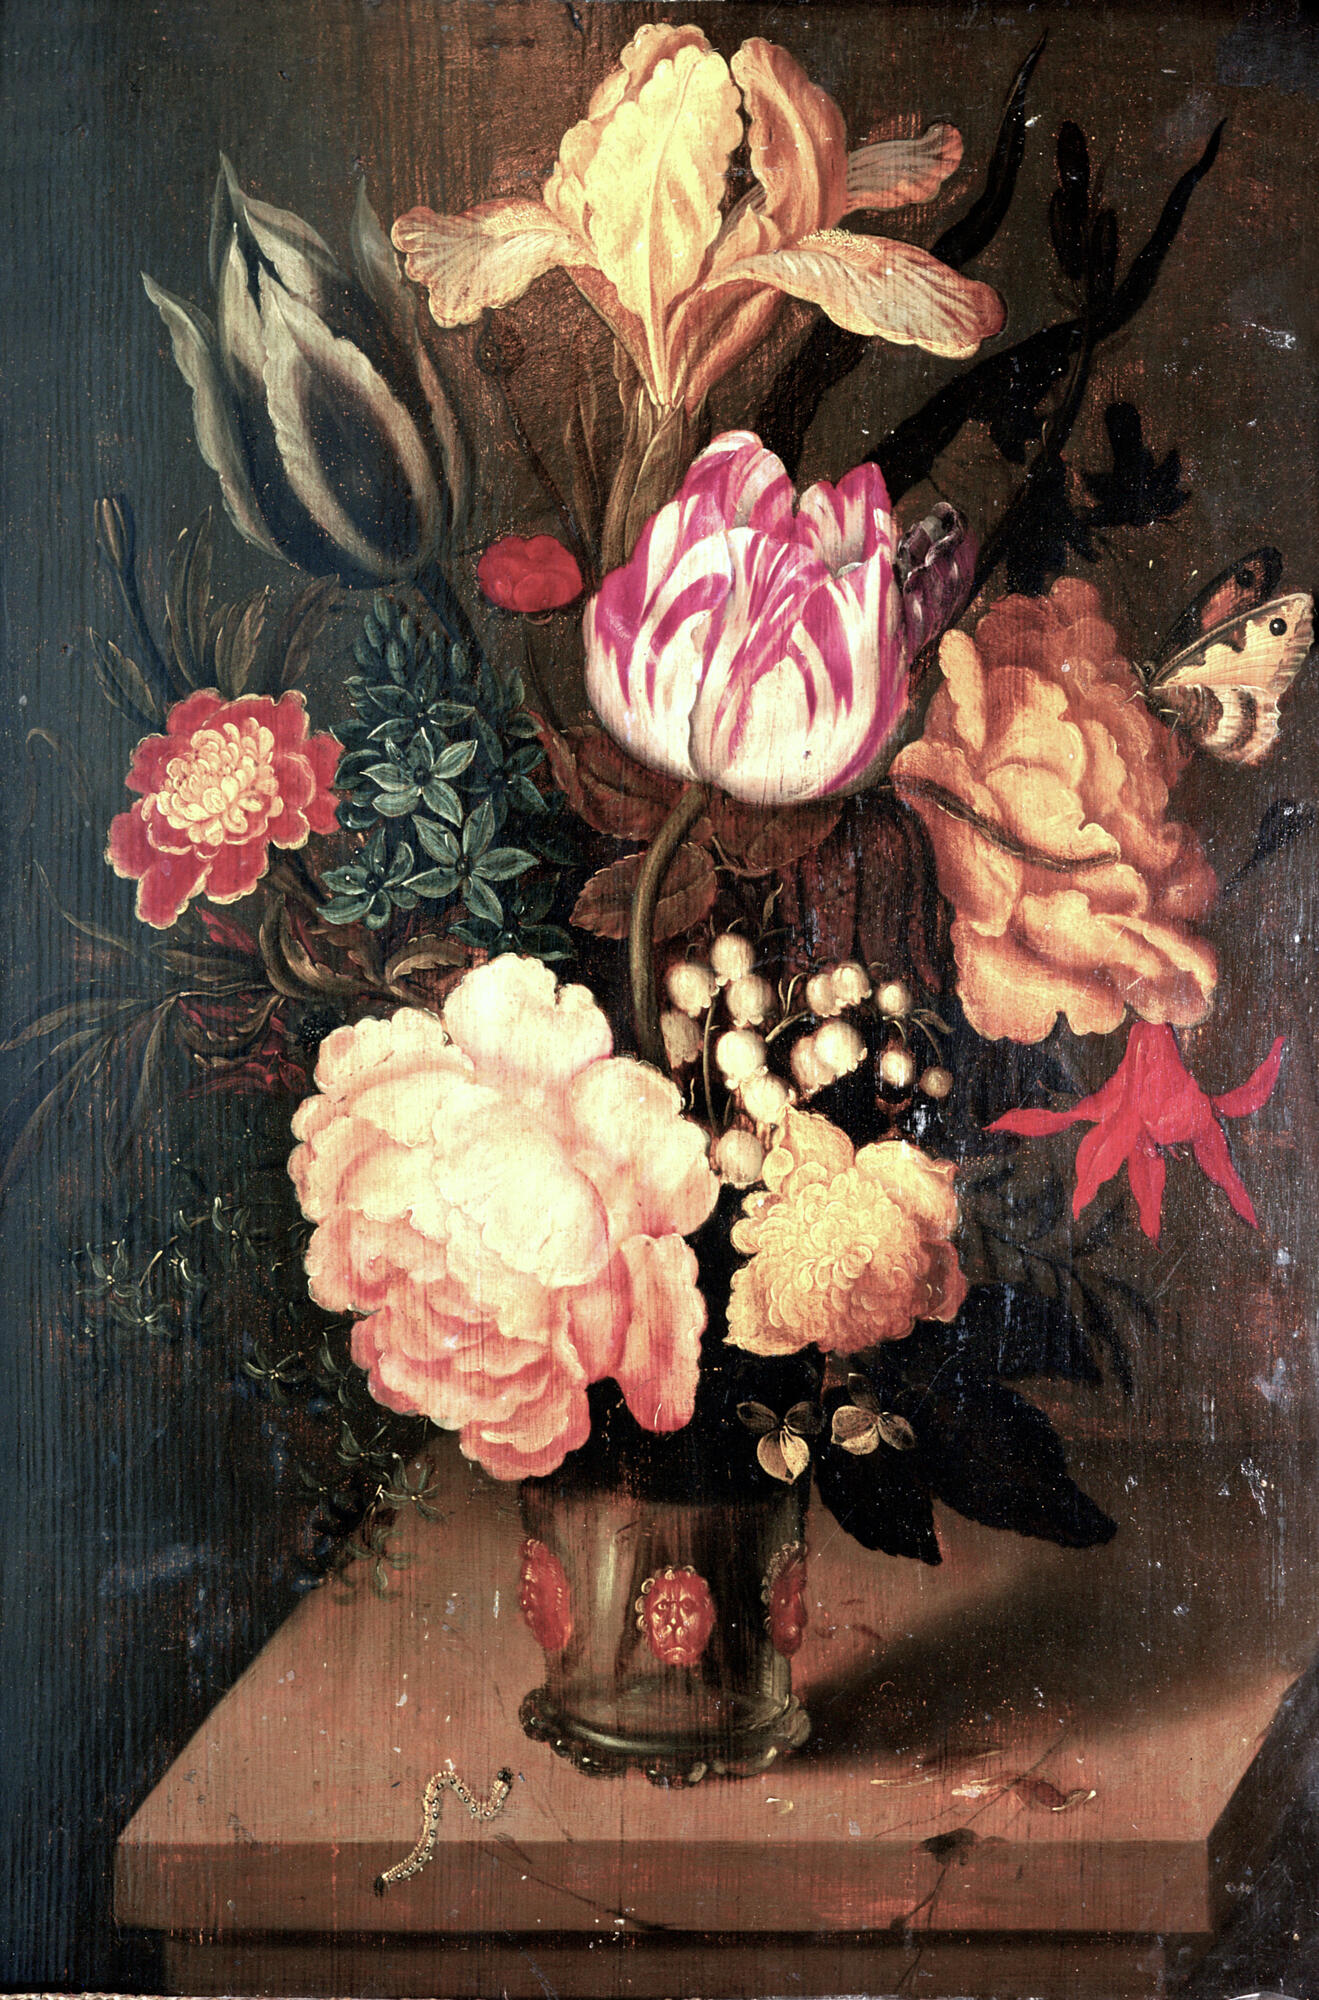 Цветы в вазе - Амброзиус Босхарт-старший. Подробное описание экспоната,аудиогид, интересные факты. Официальный сайт Artefact